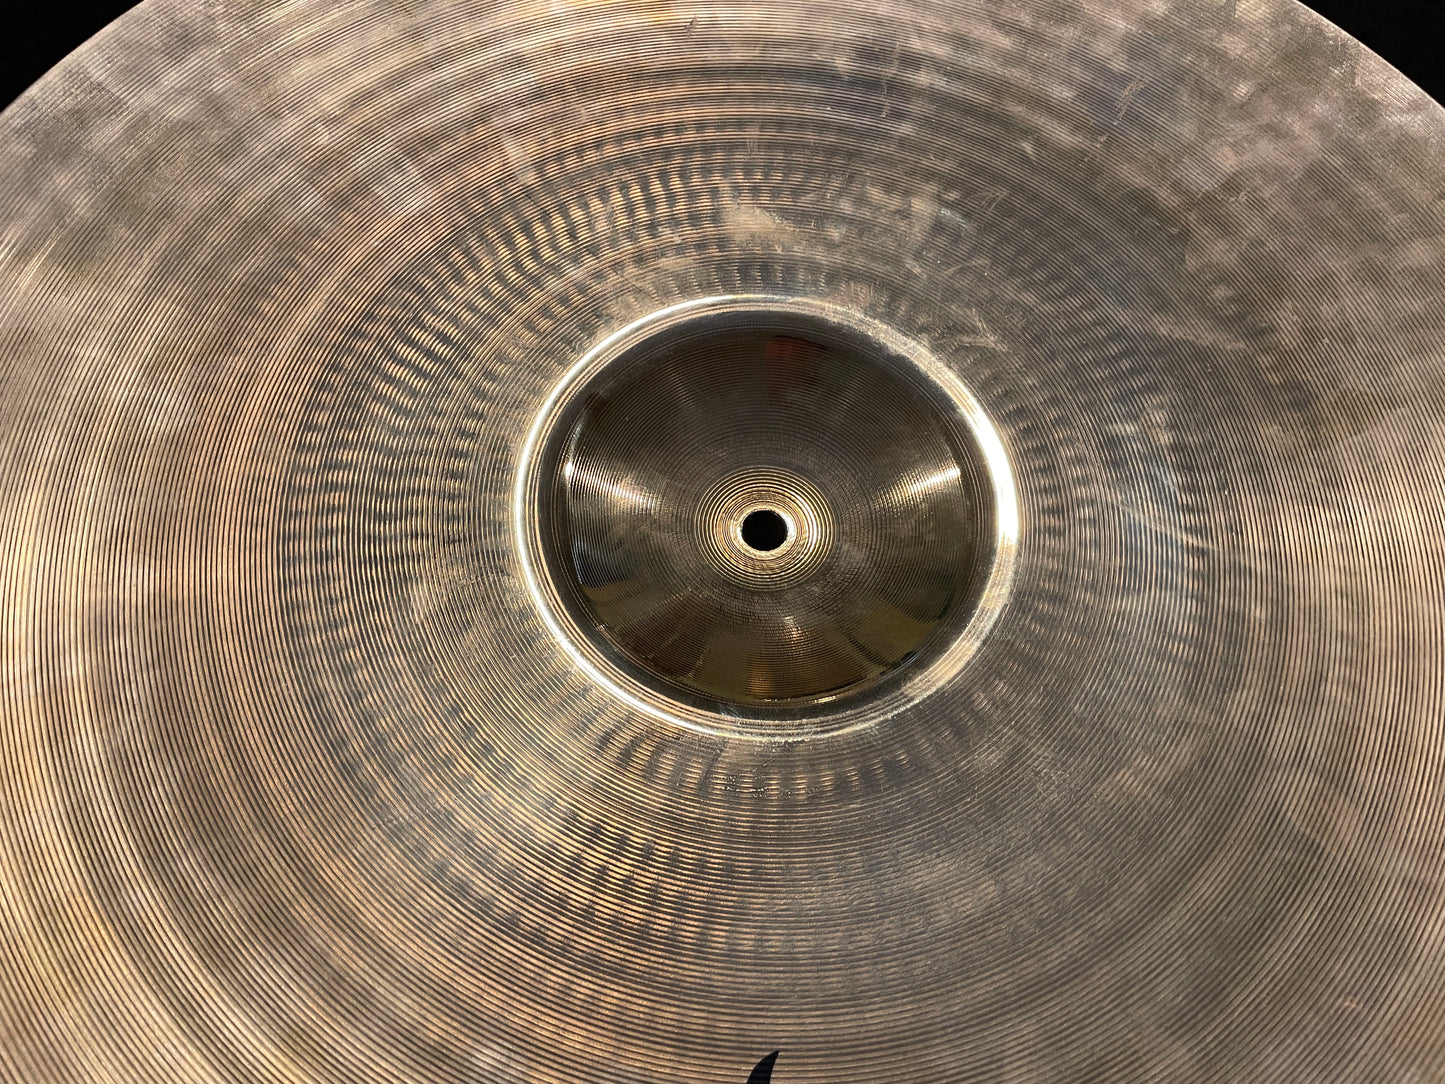 20" Zildjian A Custom Ride Cymbal 2206g